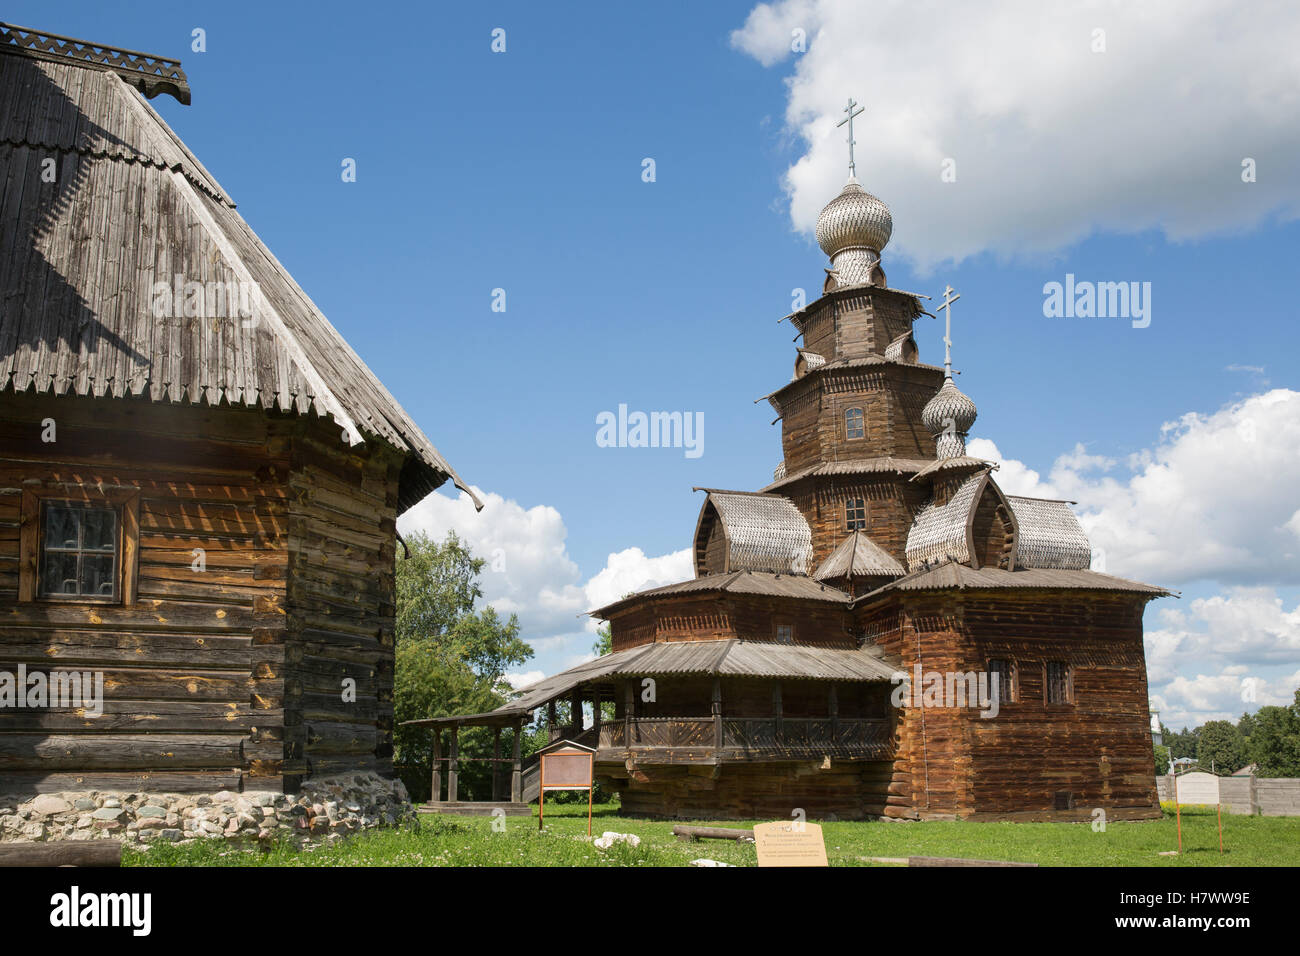 Musée de l'architecture en bois. Suzdal. La Russie Banque D'Images